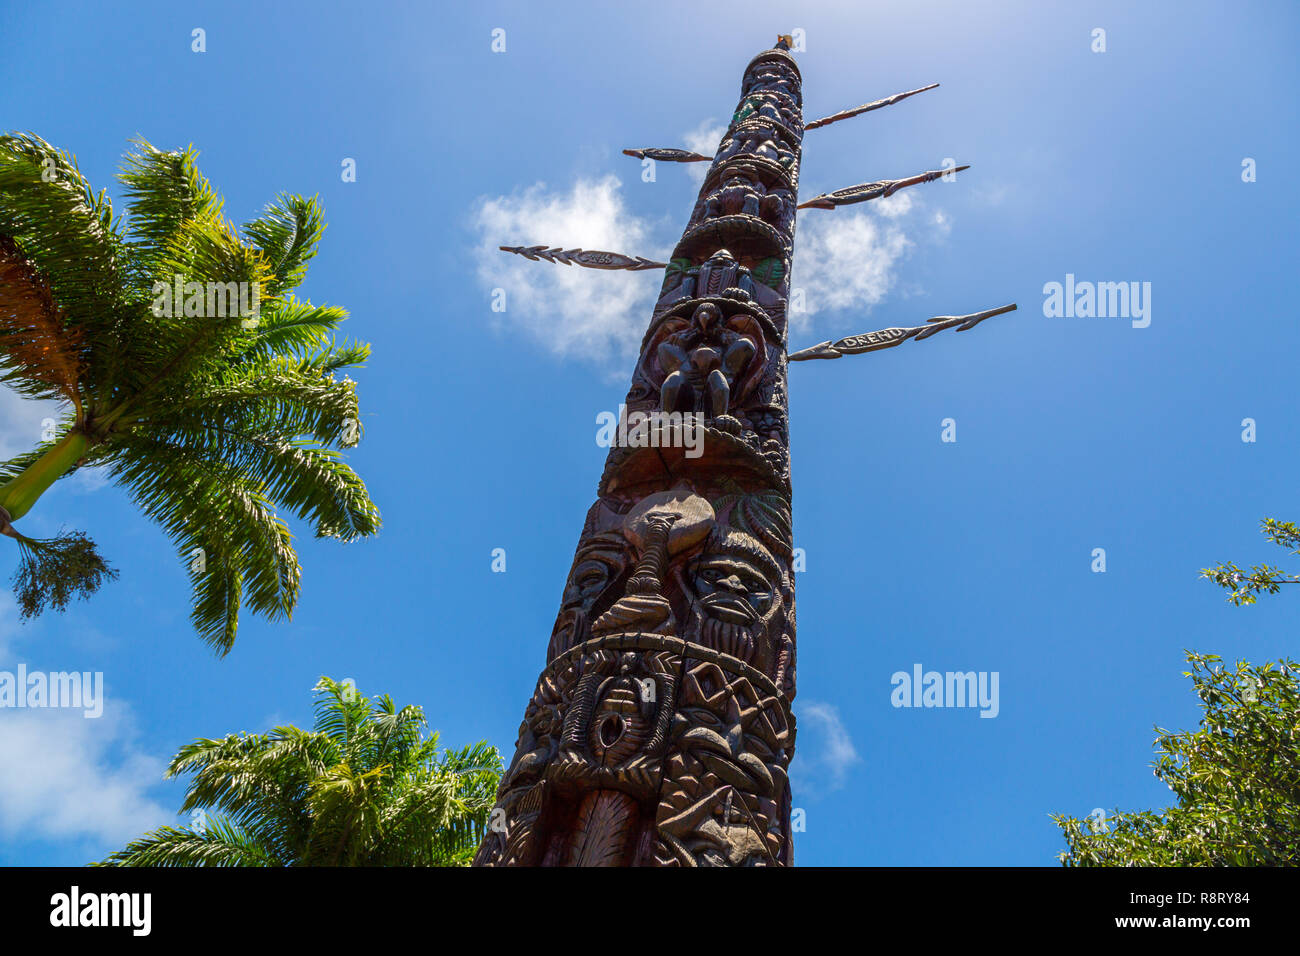 Nouméa, Nouvelle Calédonie. Mwâ Ka (Mwa Ka, grande maison ou maison de l'homme), de 12 mètres monumental totem kanak érigée en centre ville Nouméa, commémorant l'annexion de la Nouvelle Calédonie. Banque D'Images